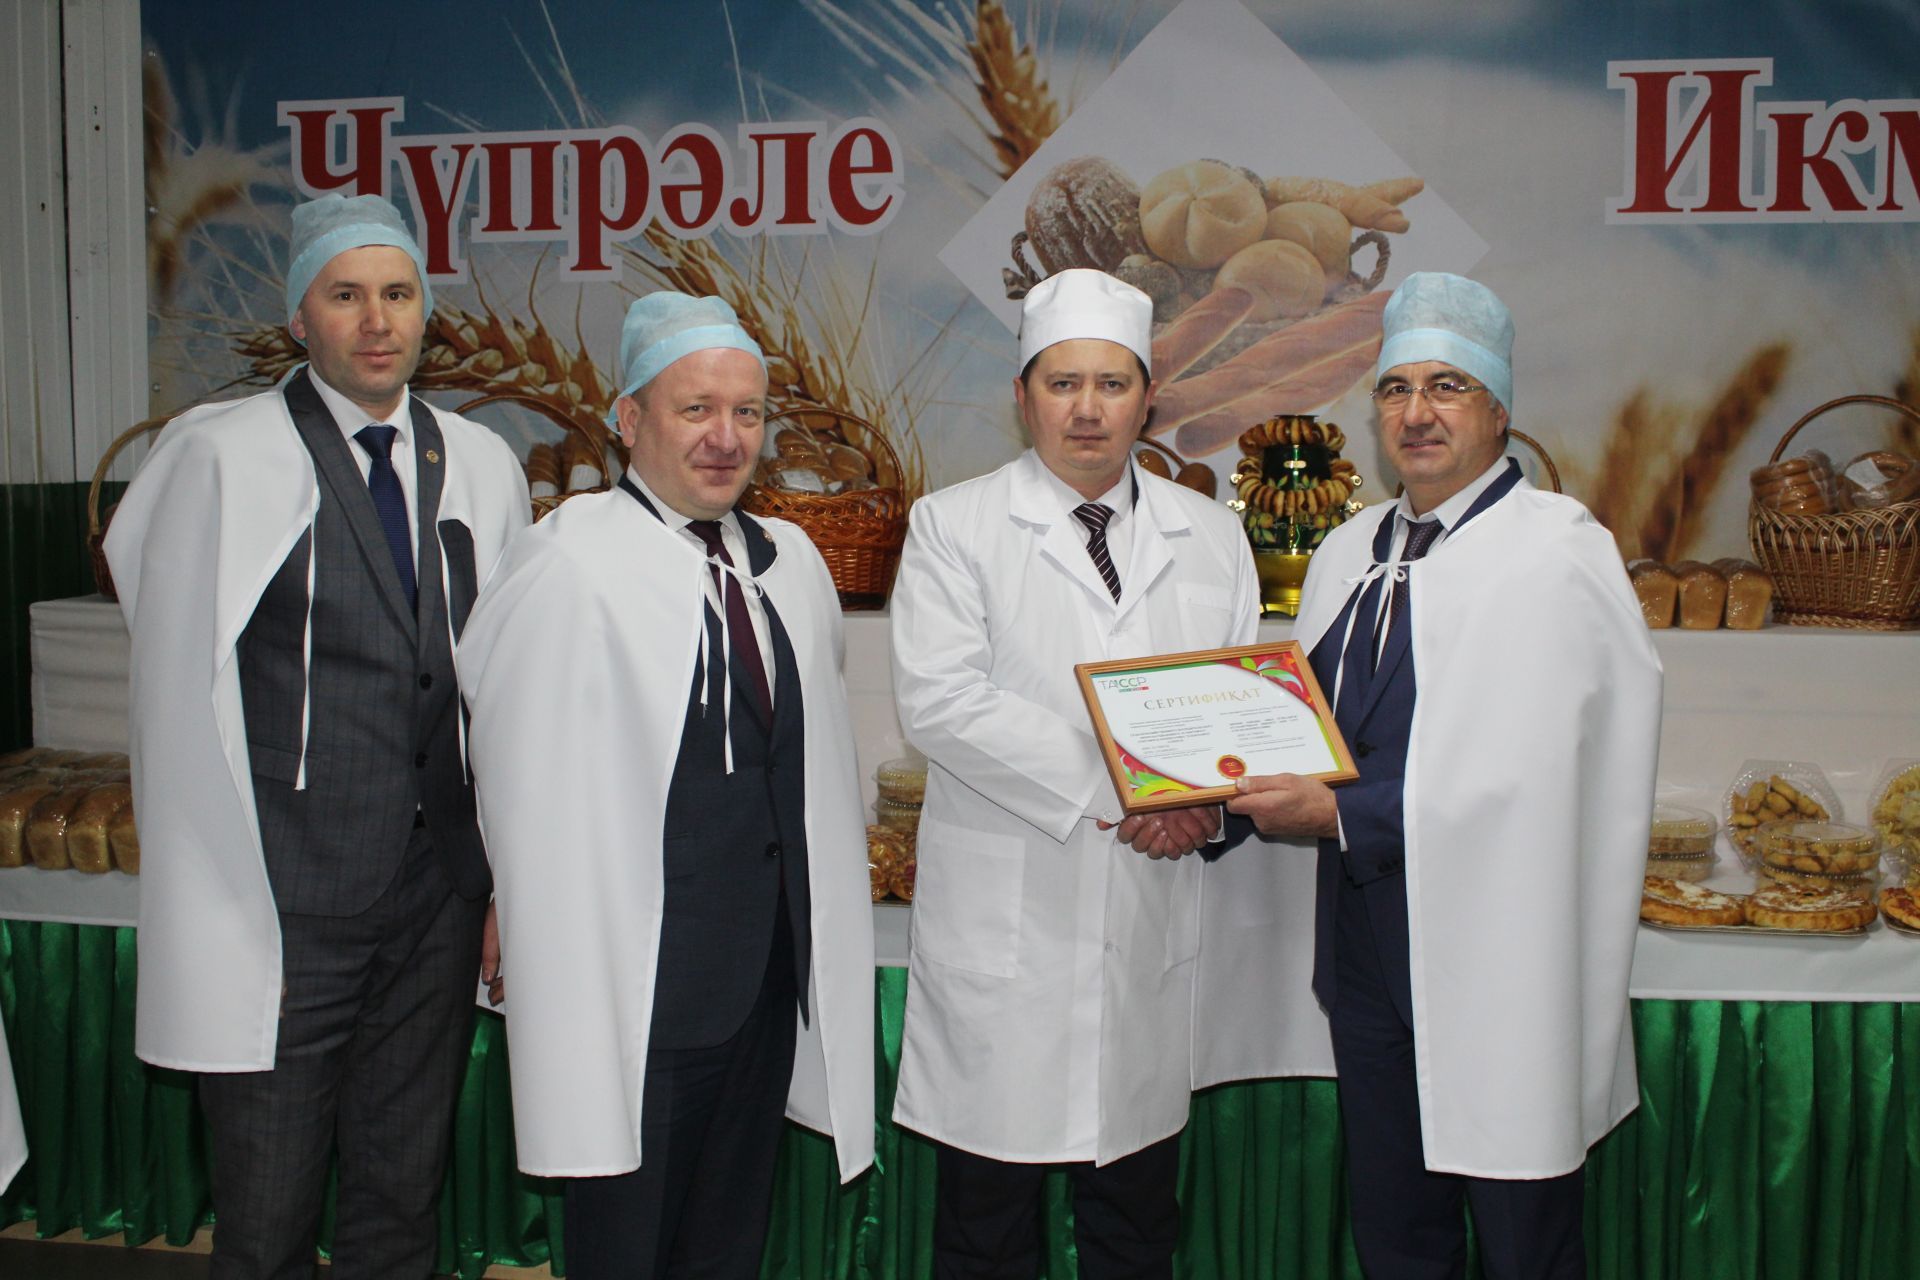 Дрожжановский хлебозавод получил сертификат на использование знака «100-летие ТАССР»